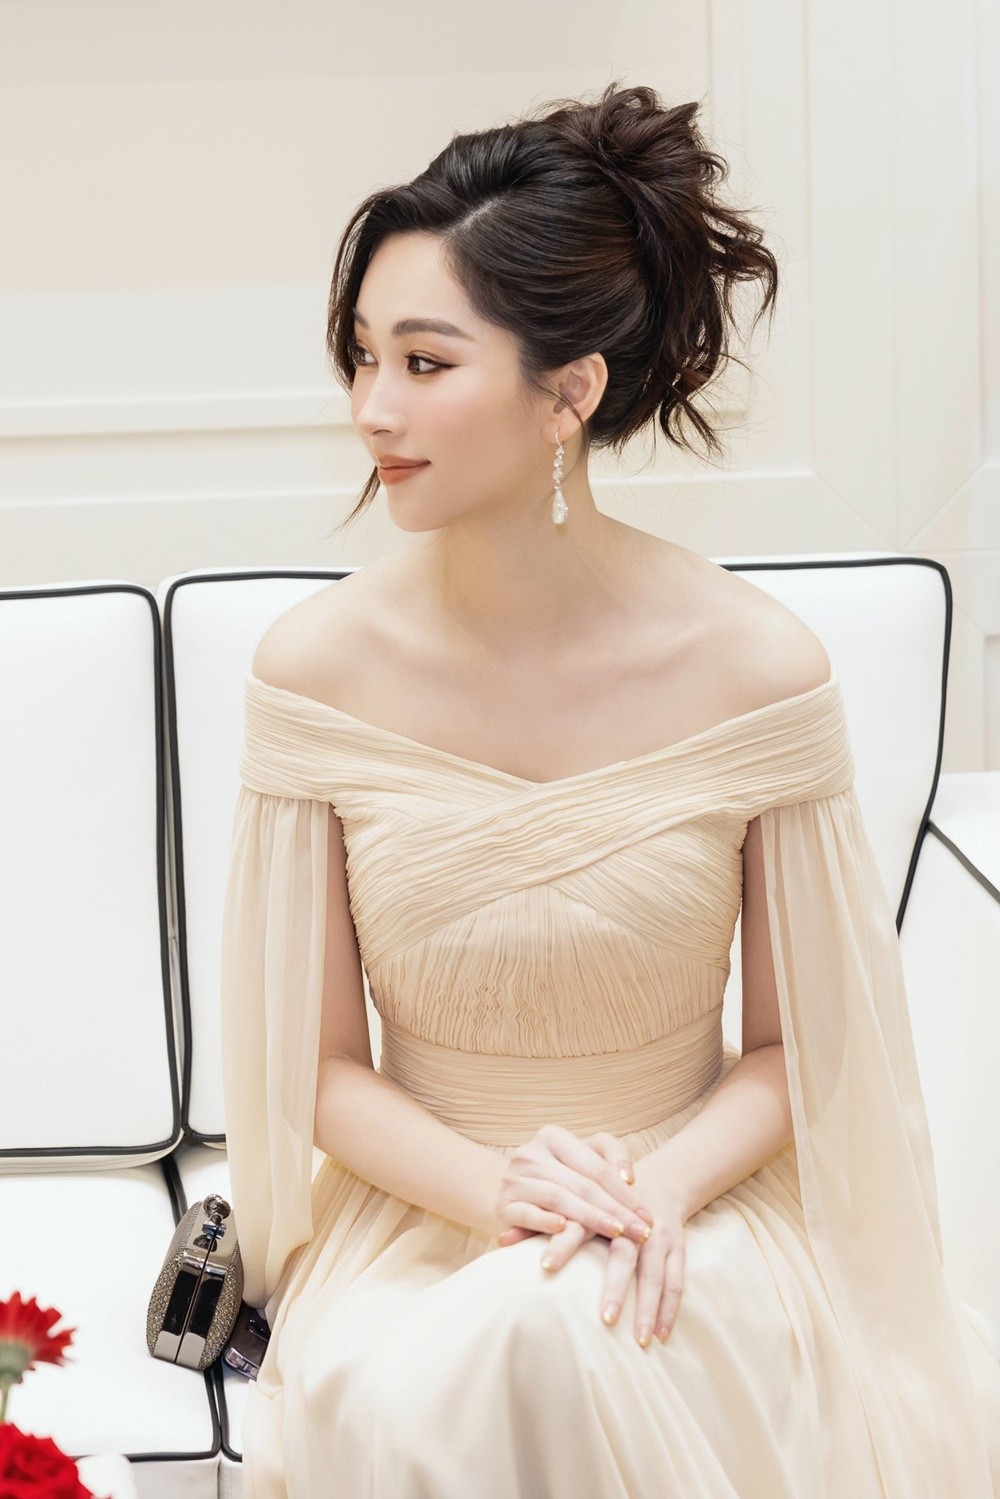 Hoa hậu Đặng Thu Thảo đeo trang sức hơn trăm tỉ đồng, khoe nhan sắc vạn người mê